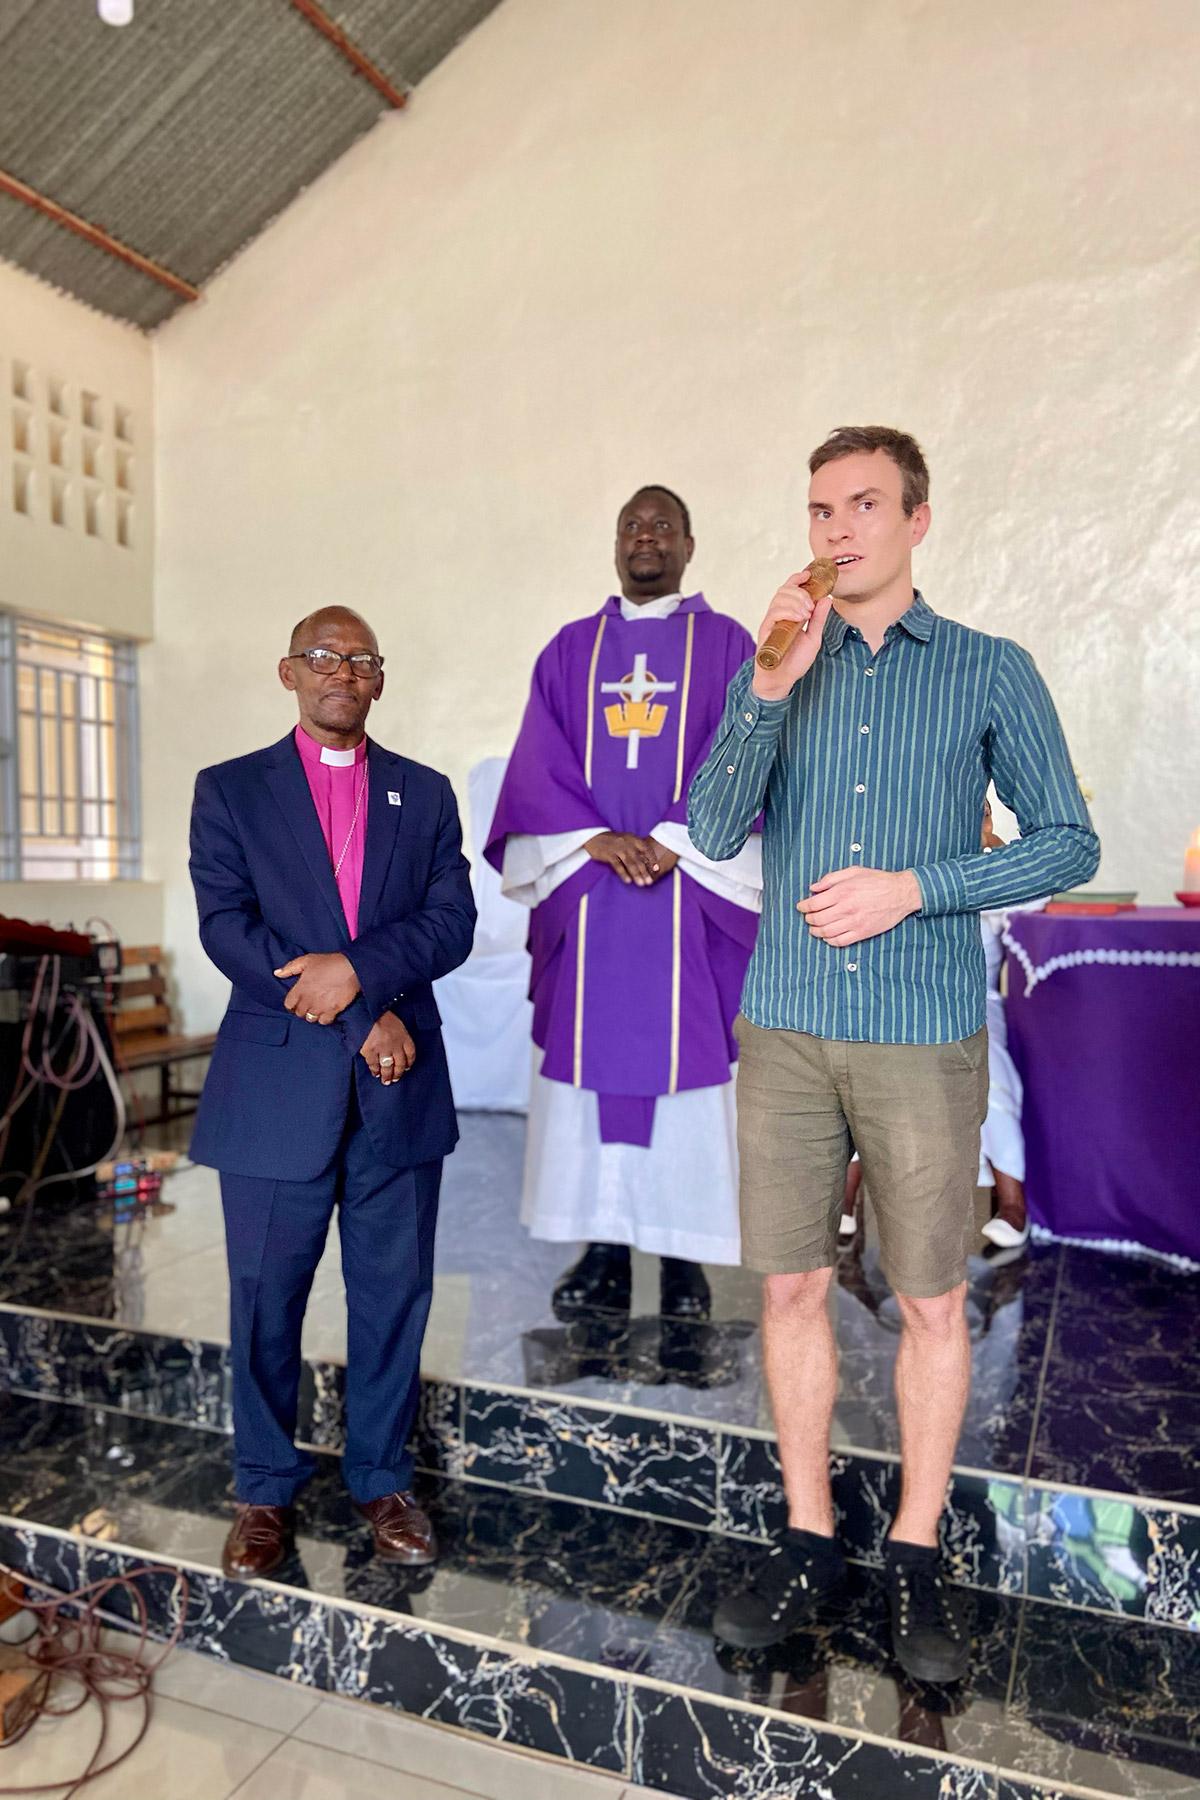 Lauri Grünthal, Evangelisch-Lutherische Kirche Finnlands, begrüßt die Gemeindemitglieder der LKR-Gemeinde in Kigali während des Sonntagsgottesdienstes. Auf der linken Seite steht LKR-Bischof Evalister Mugabo. Foto: LWB/S. Sullivan